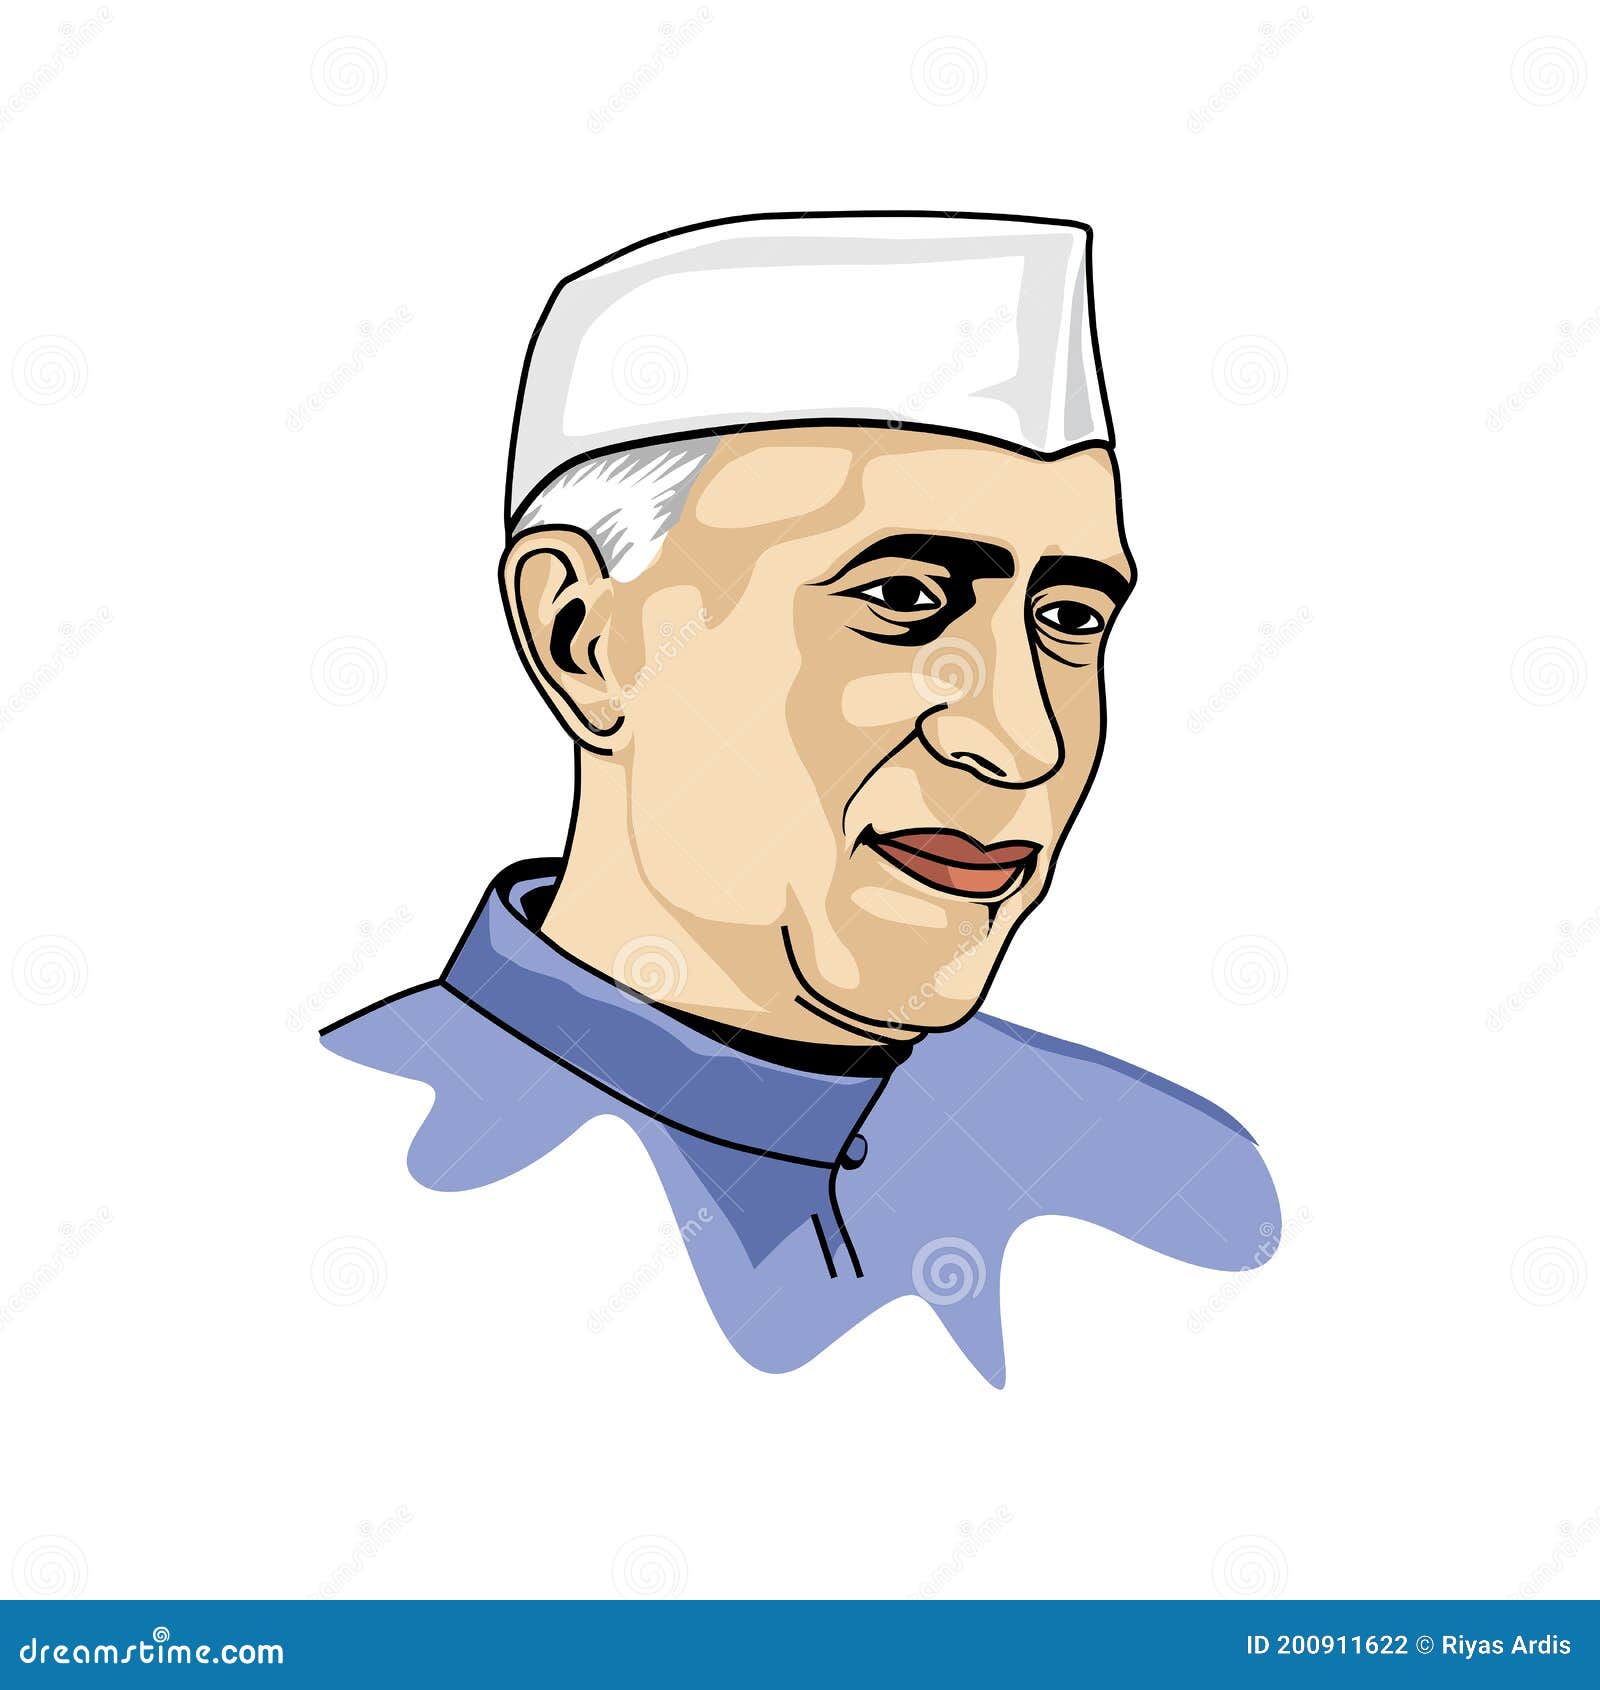 Pandit Jawaharlal Nehru Drawing | Paint For Kidz - YouTube